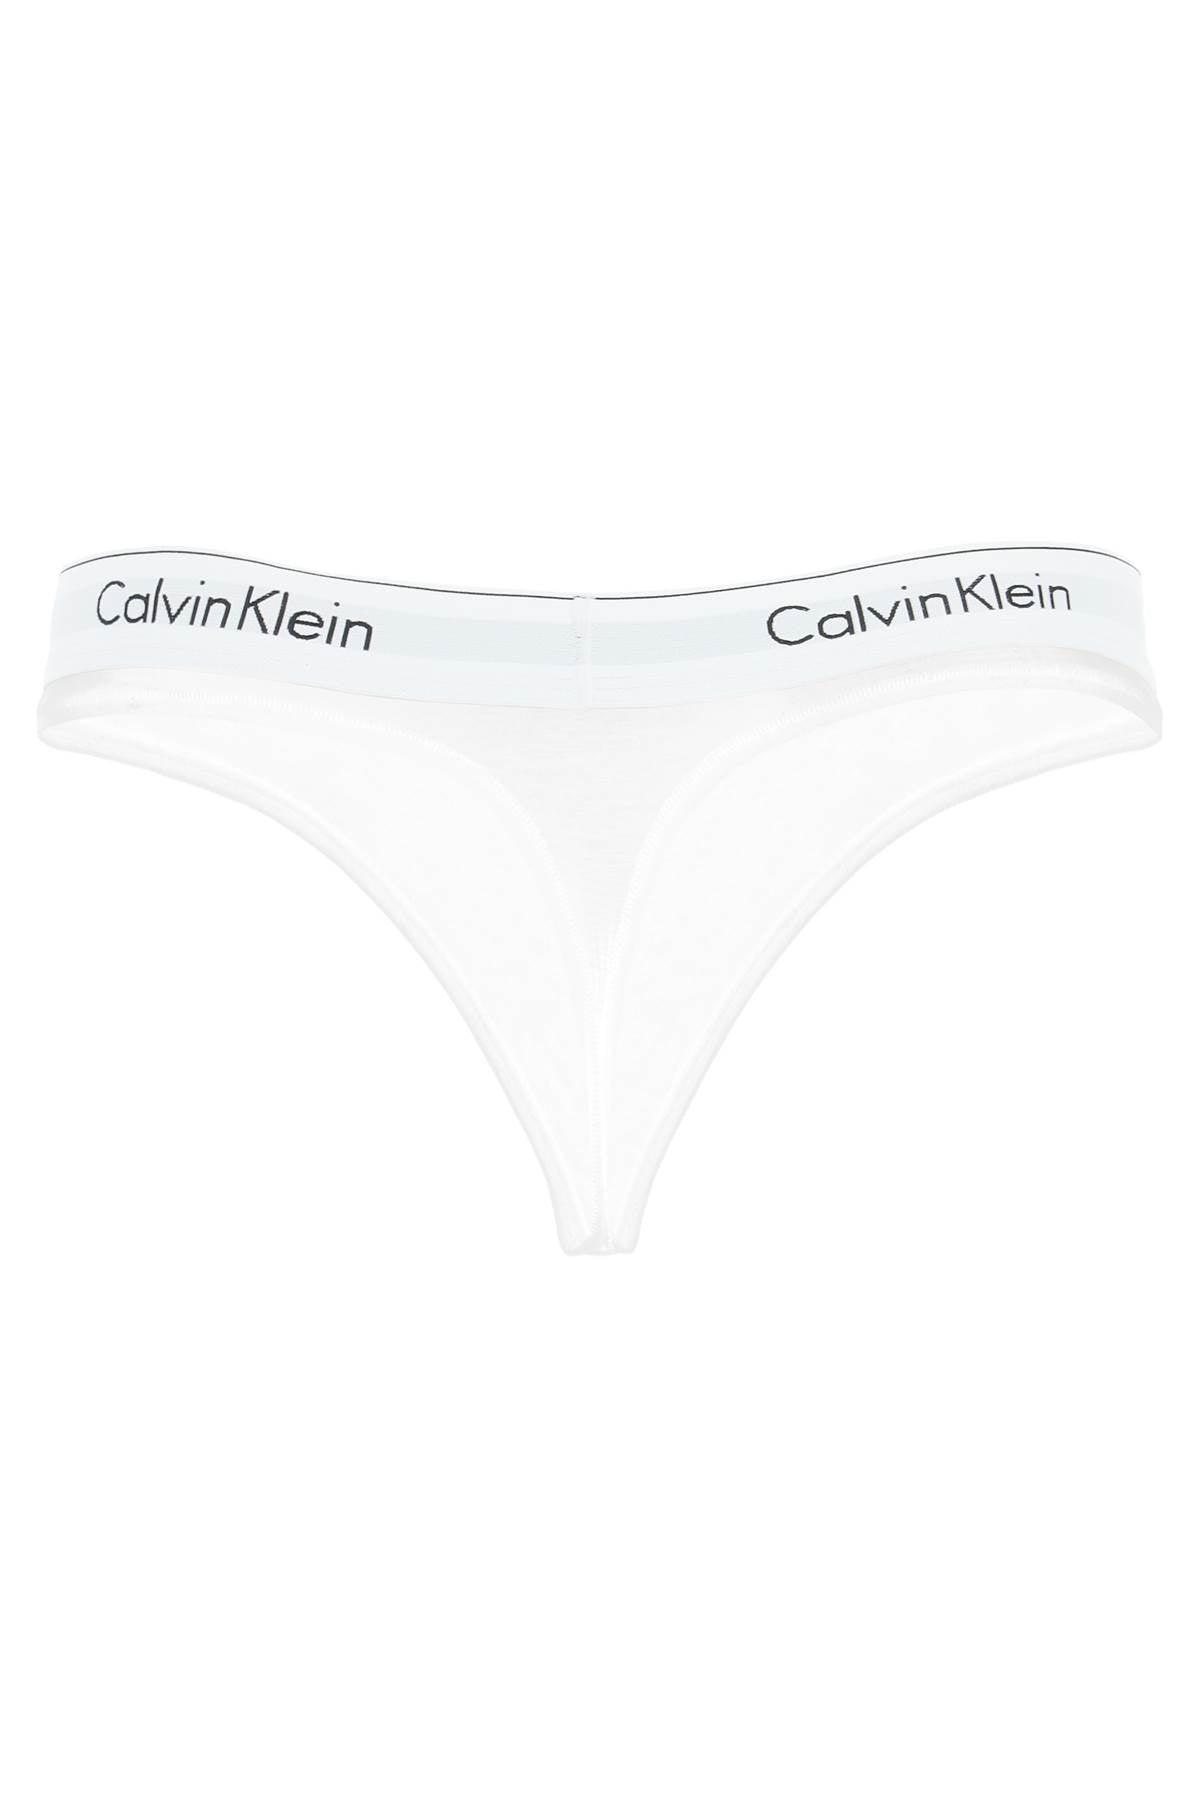 Calvin Klein Branded Border Thongs in White | Lyst